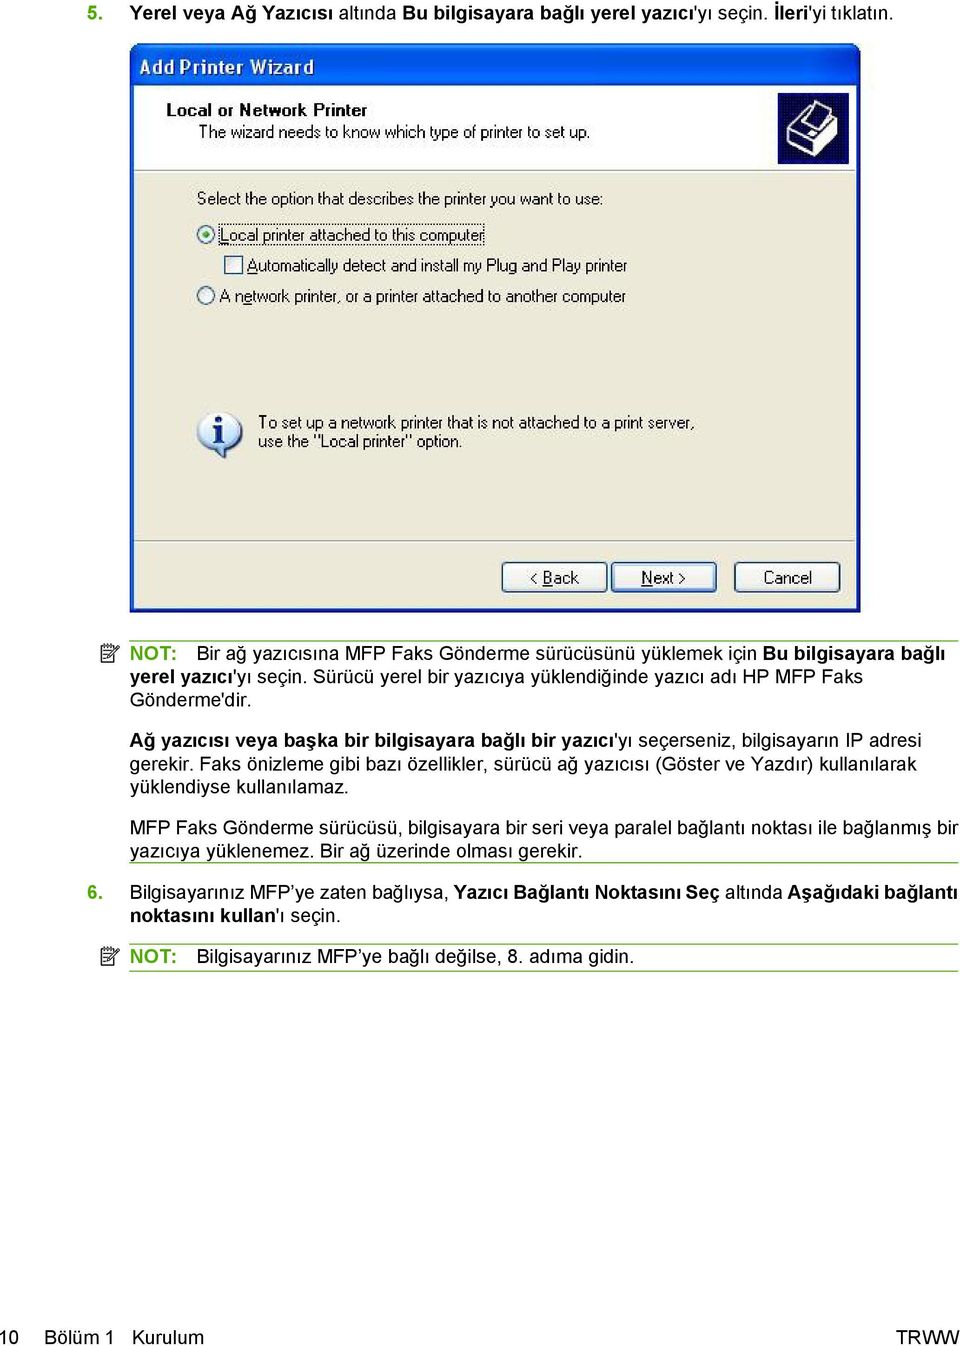 Ağ yazıcısı veya başka bir bilgisayara bağlı bir yazıcı'yı seçerseniz, bilgisayarın IP adresi gerekir.